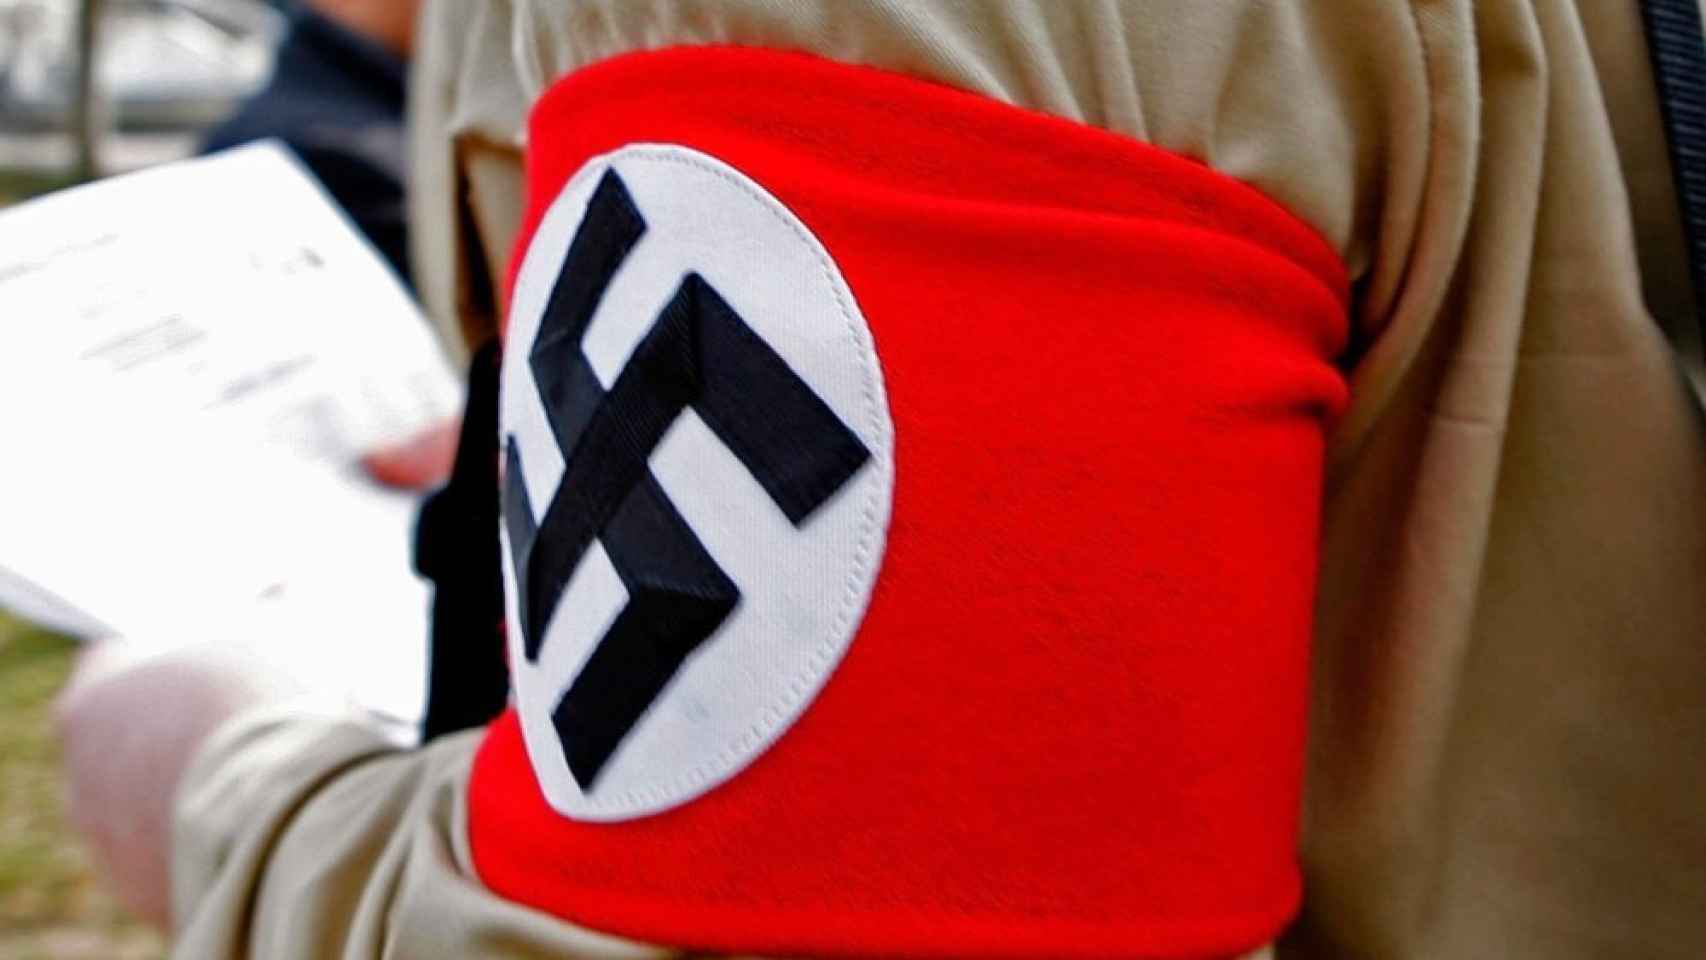 Cruz gamada del símbolo nazi